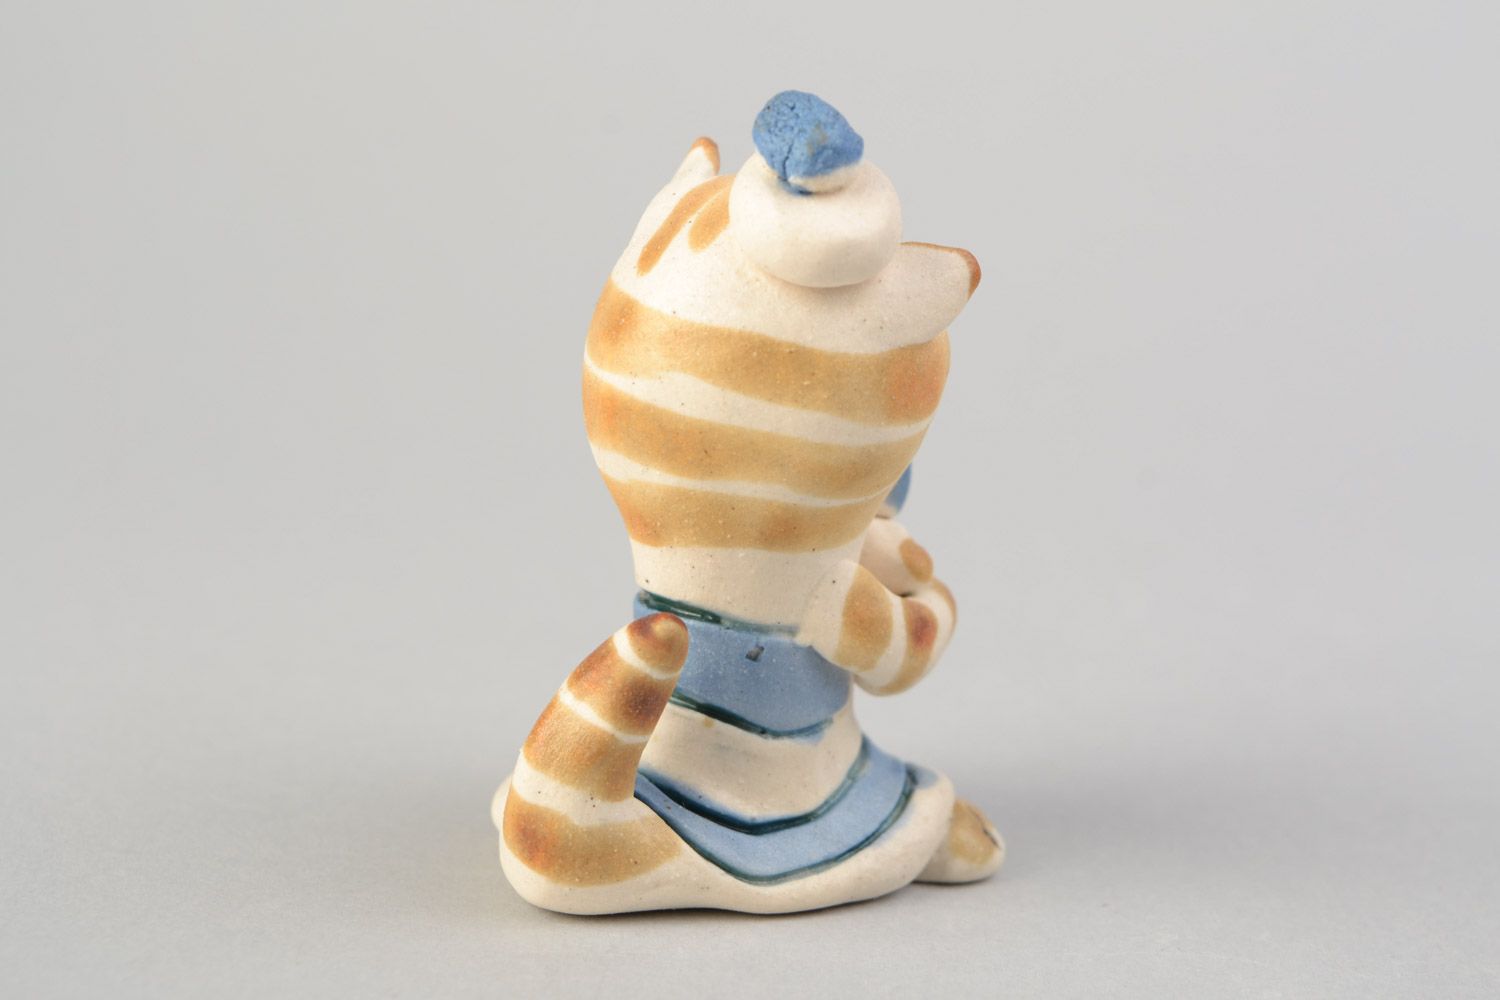 Авторская расписанная глазурью глиняная фигурка кошки кокетки ручной работы фото 5